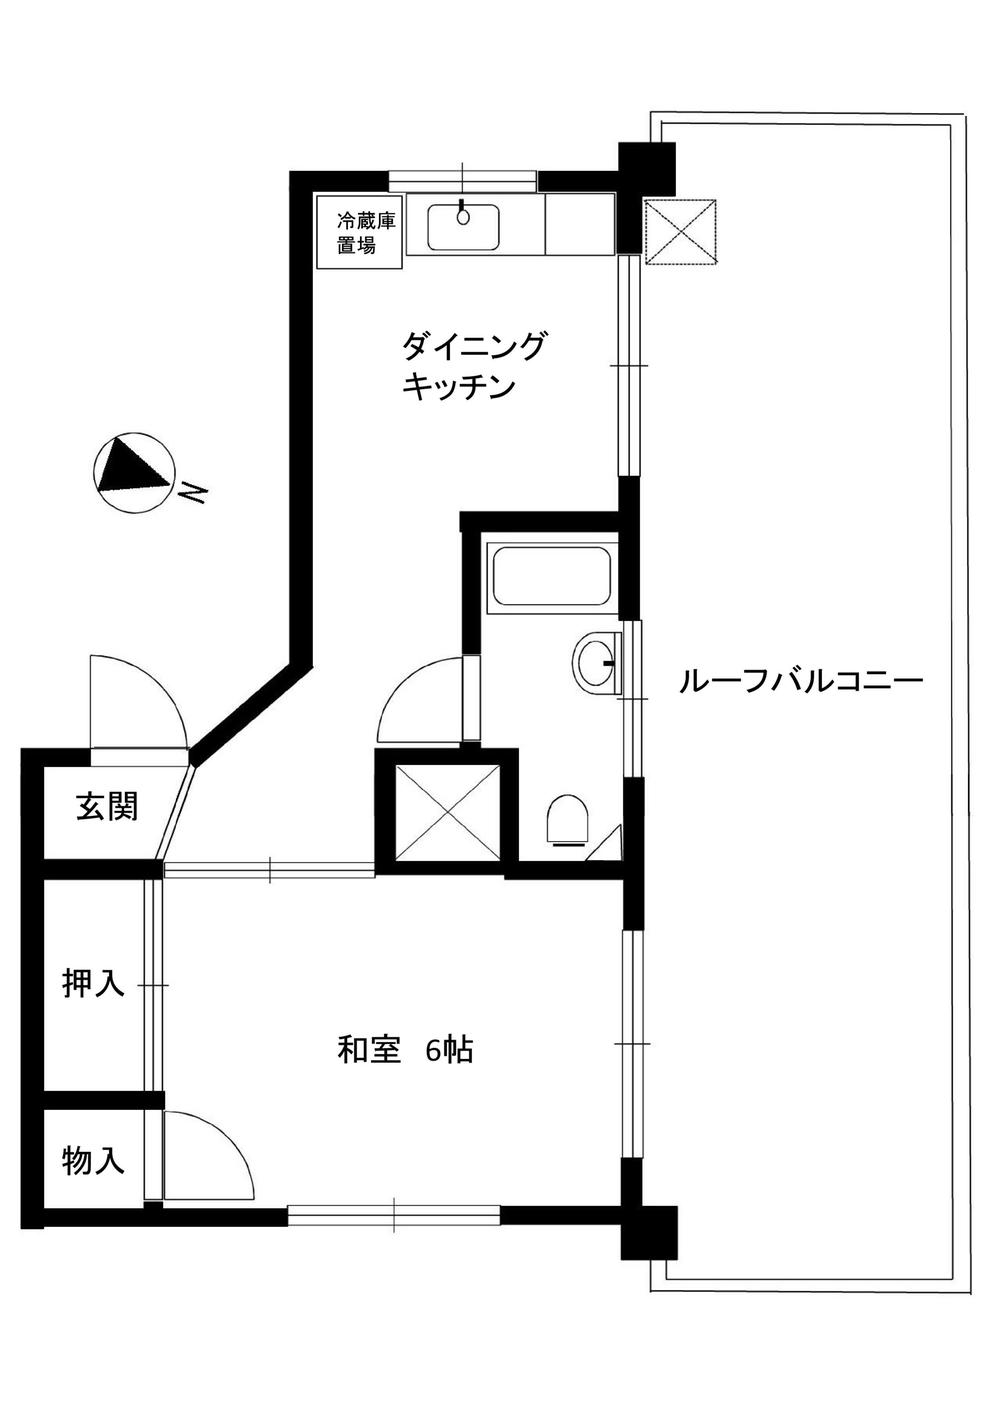 Floor plan. 1DK, Price 9.8 million yen, Occupied area 26.89 sq m